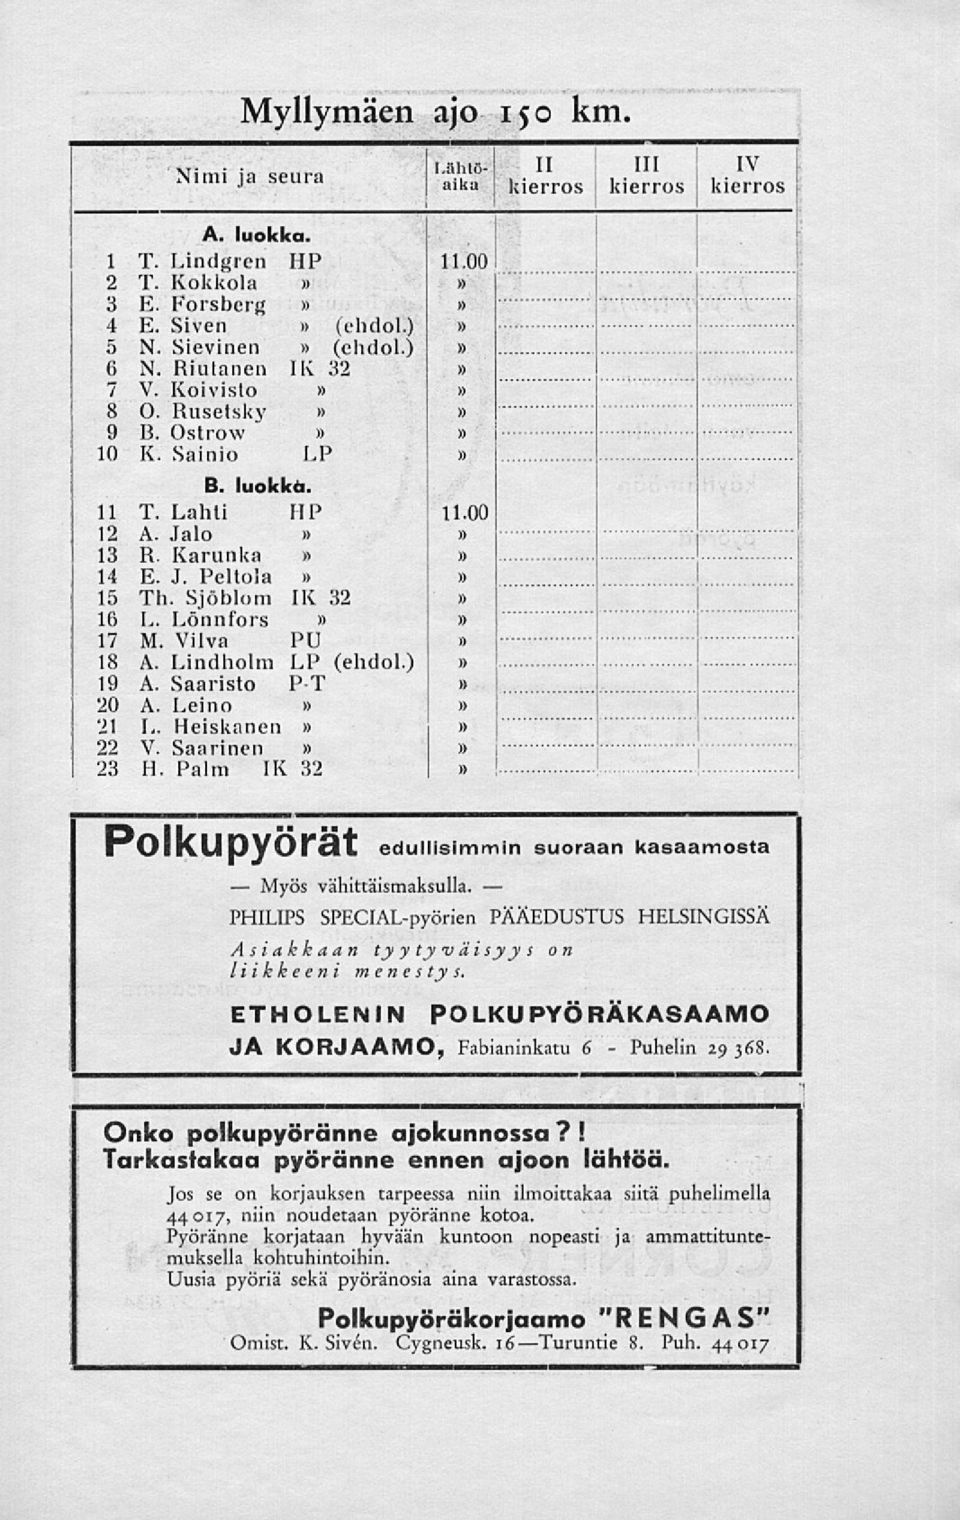 Lindholm LP (ehdol.) 19 A. Saaristo P-T 20 A. Leino 21 L. Heiskanen 22 V. Saarinen 23 H. Palm IX 32 11.00 i )) 11.00 edullisimmin suoraan kasaamosta vähittäismaksulla.